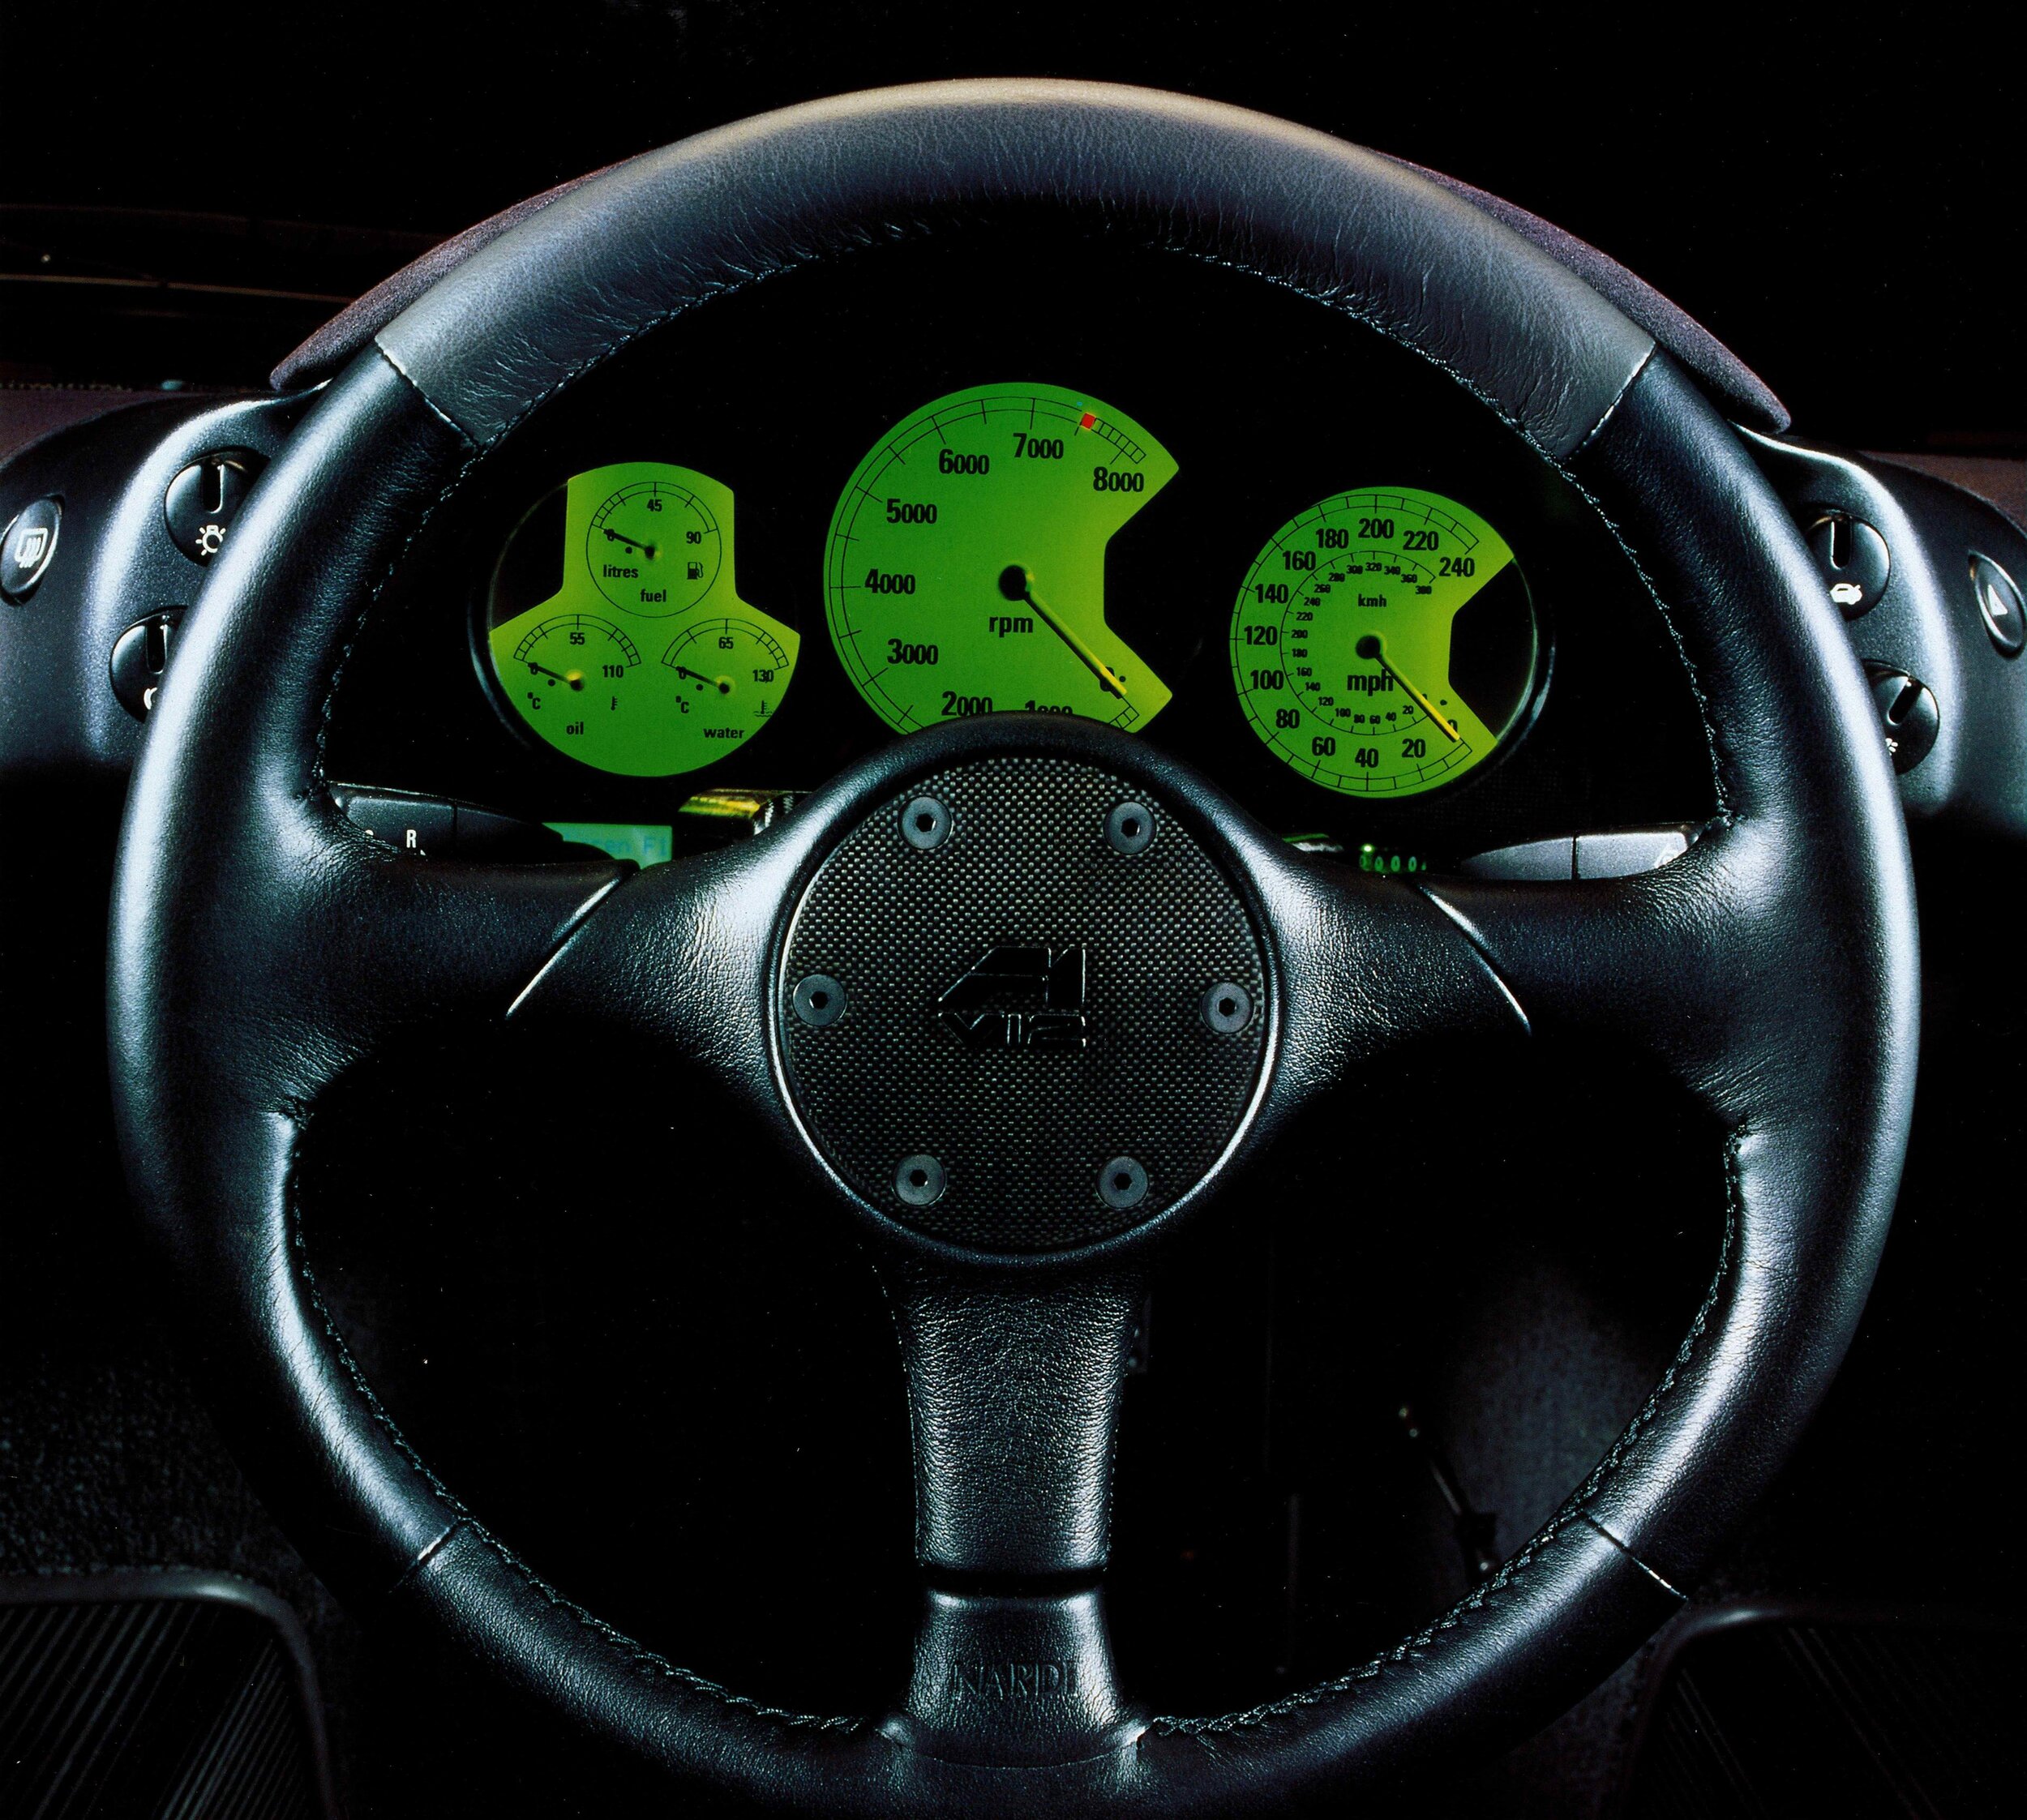 McLaren F1 instrument panel and steering wheel.jpg